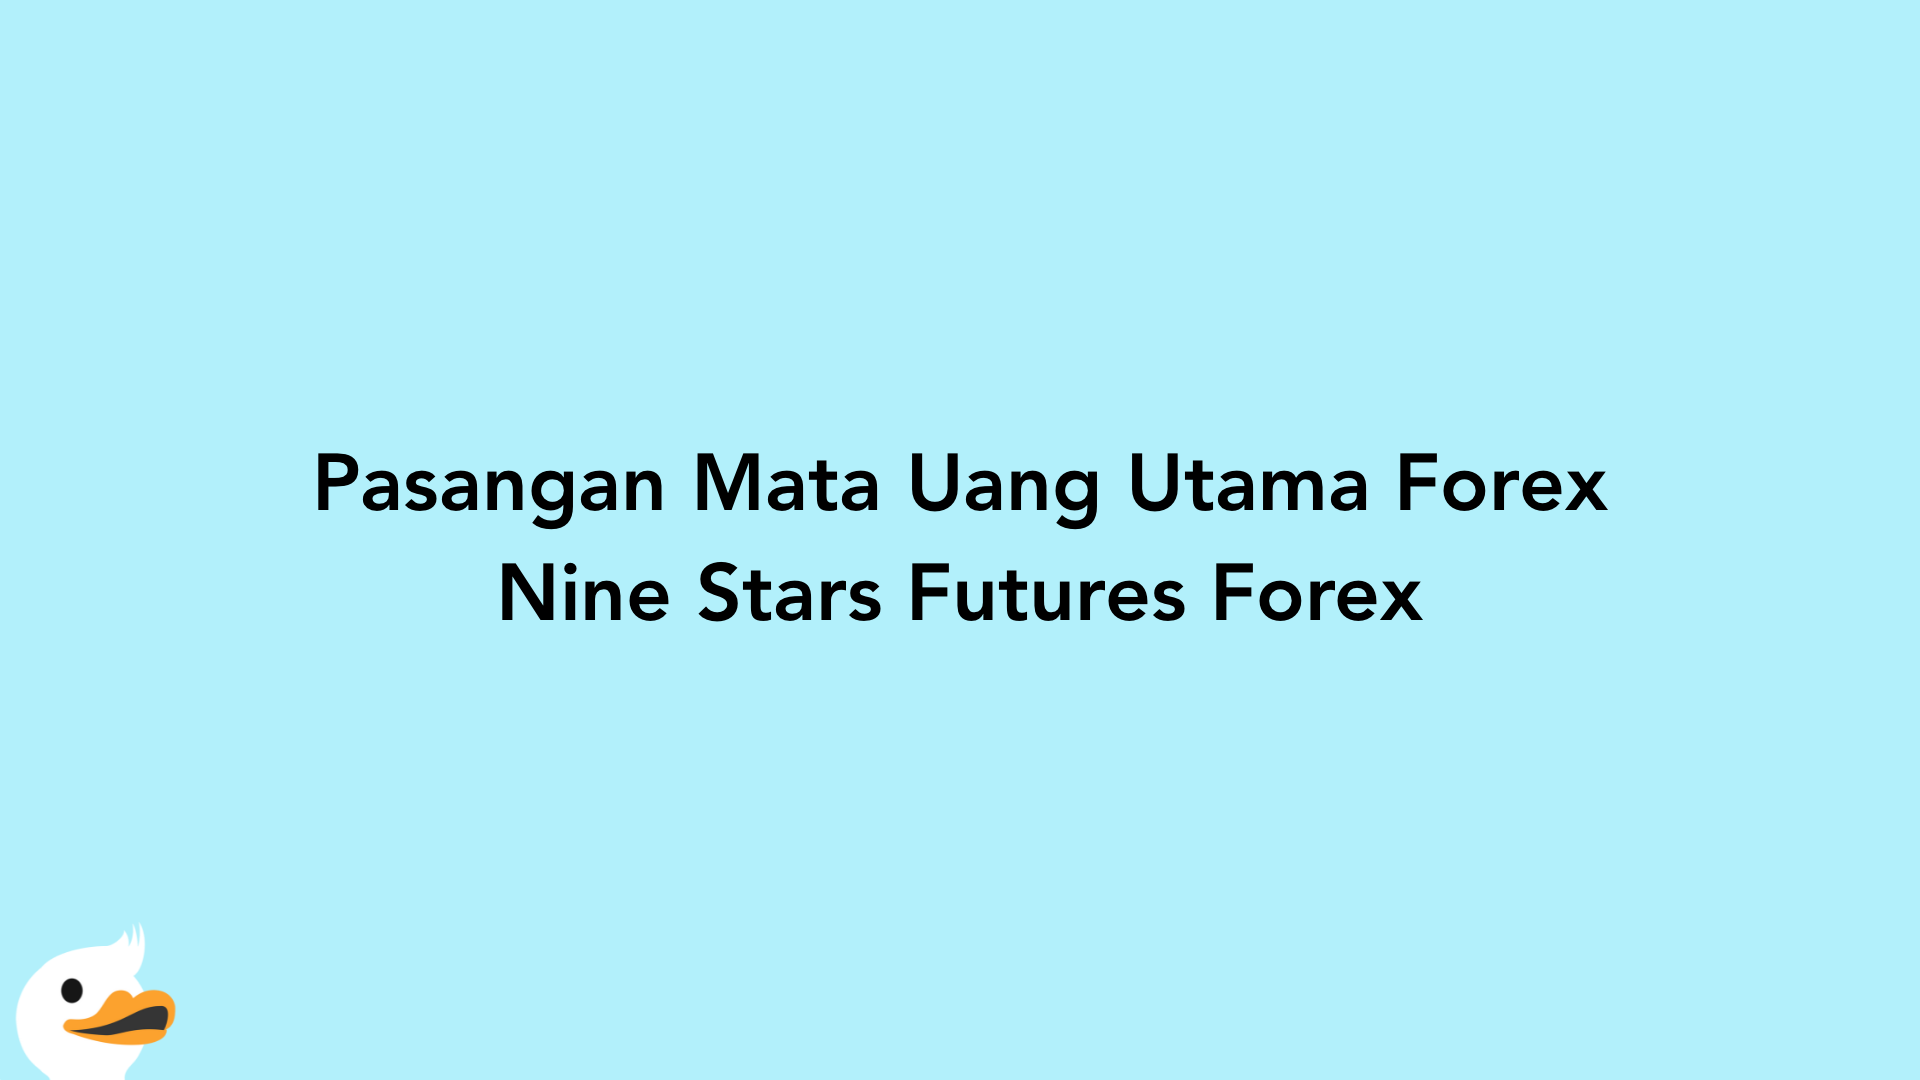 Pasangan Mata Uang Utama Forex Nine Stars Futures Forex